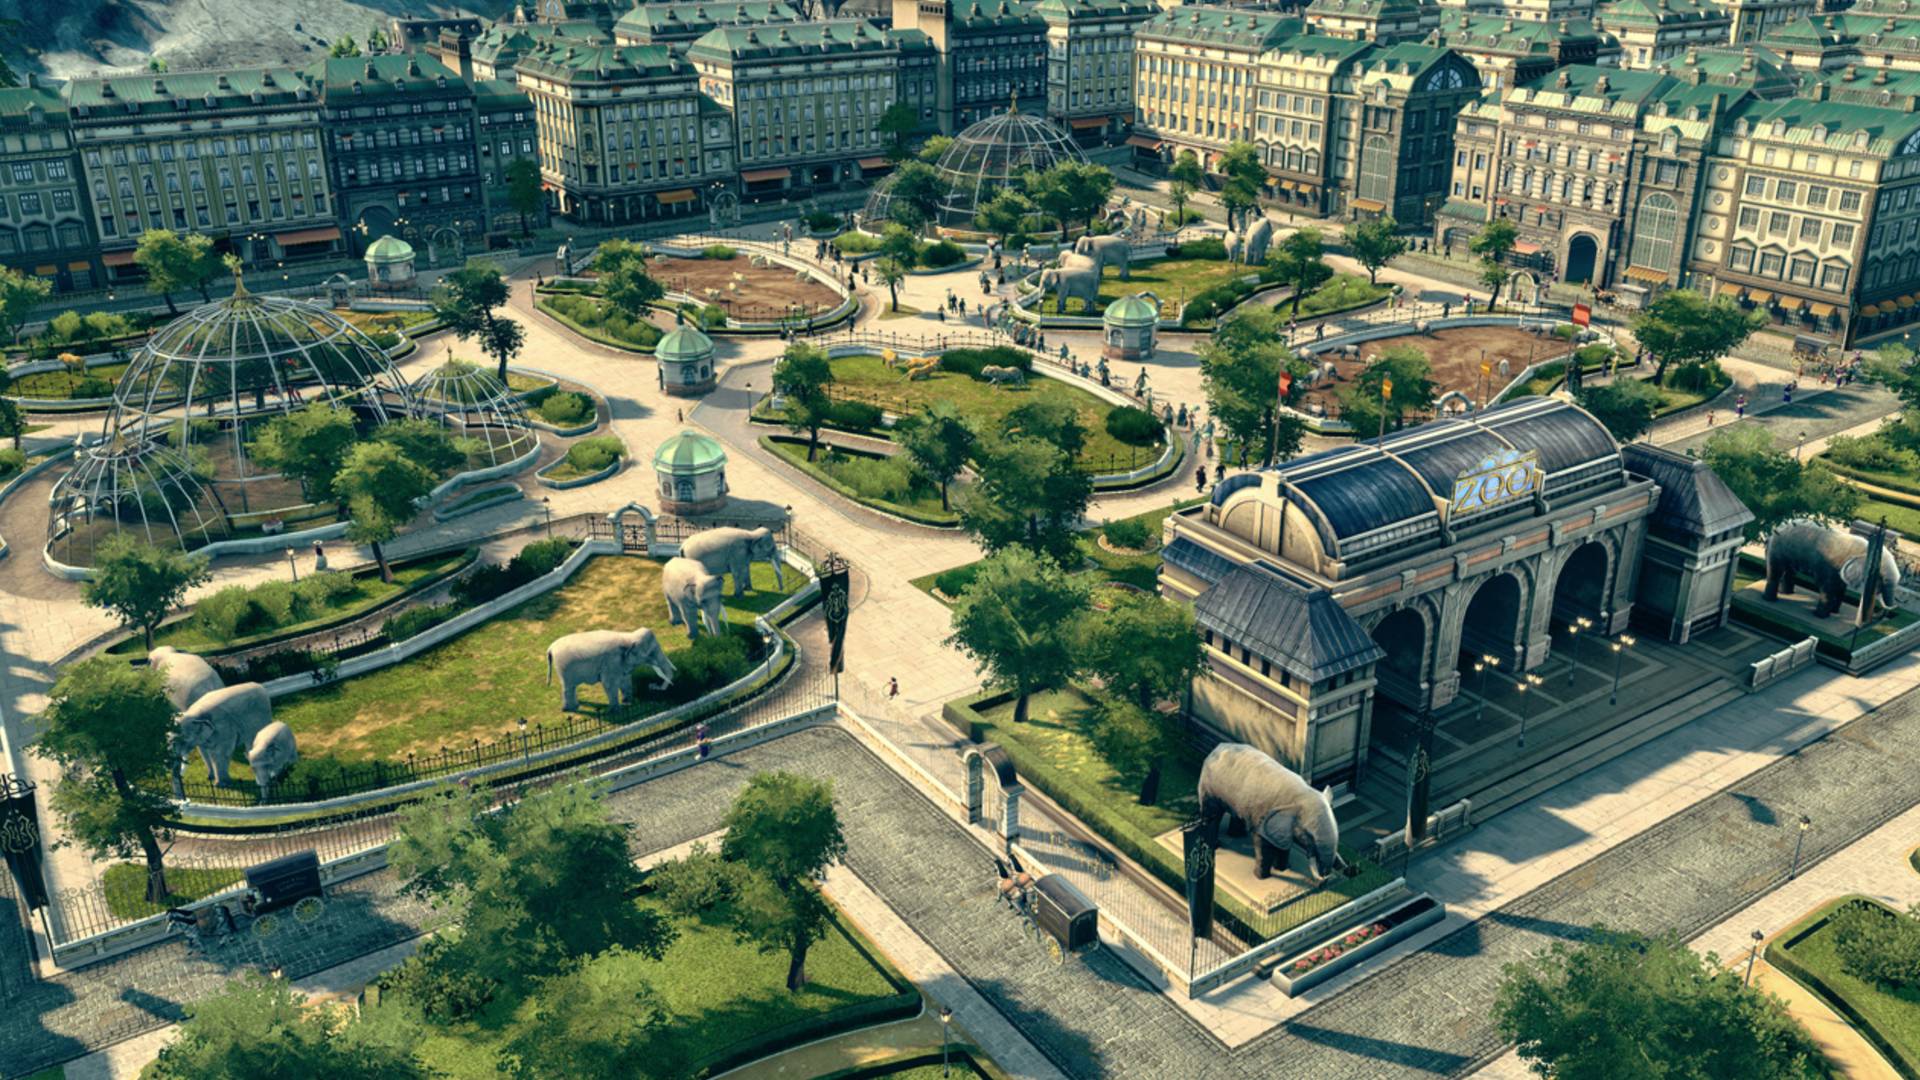 شہر بنانے کے بہترین کھیل: انو 1800. تصویر میں مجسموں اور شیشے کے دائرے سے بھرا ہوا پارک دکھایا گیا ہے۔